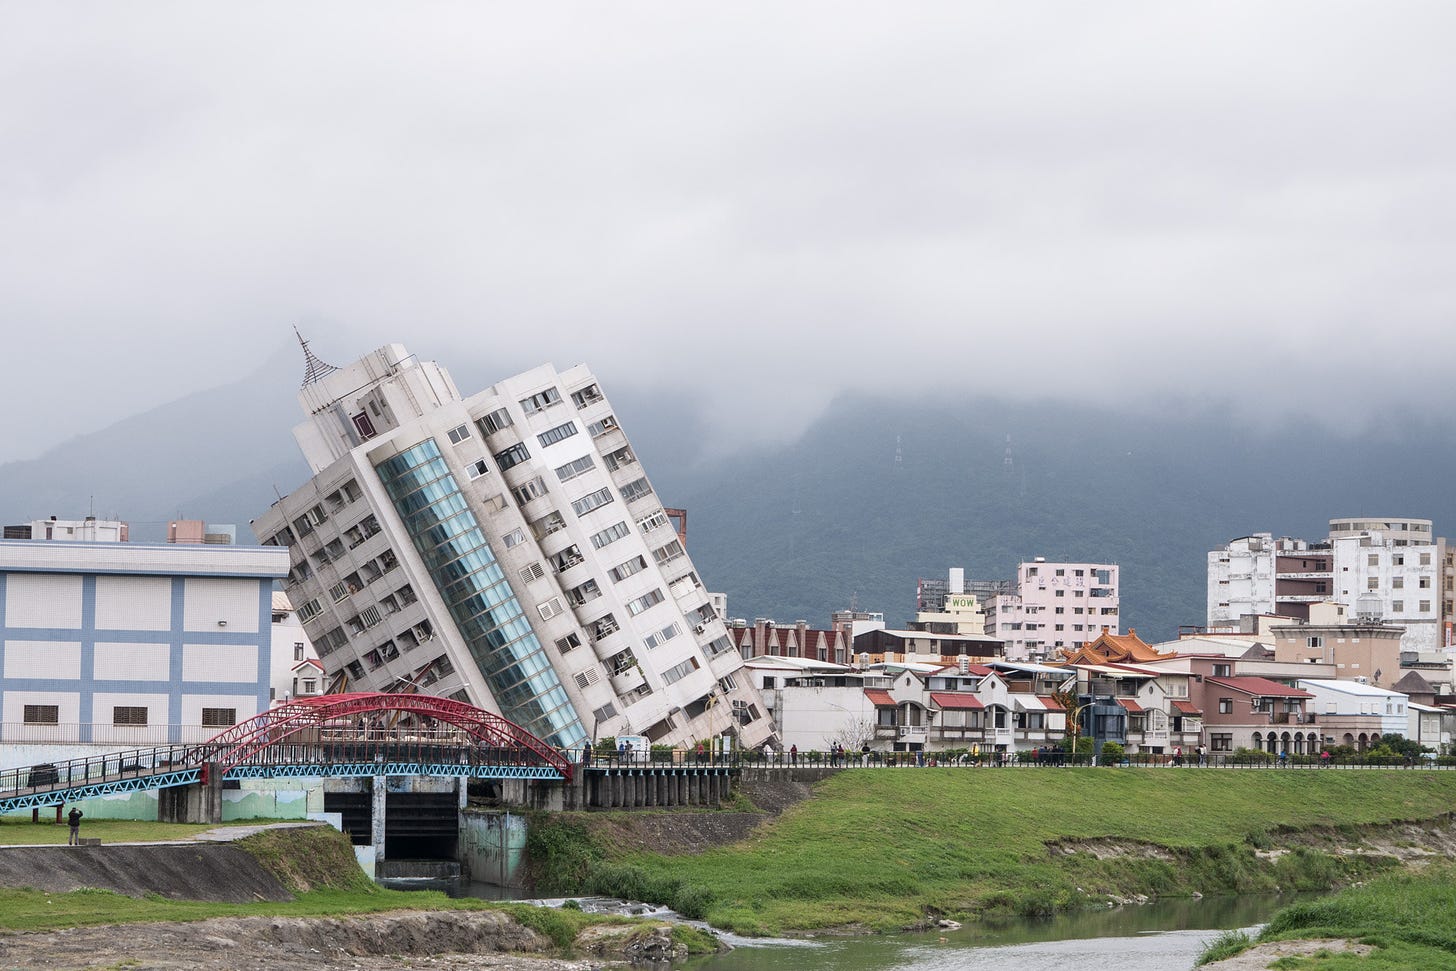 Prédio tombado após terremoto. Dia nublado e prédio tombado à esquerda ao lado de casas e às margens de um rio